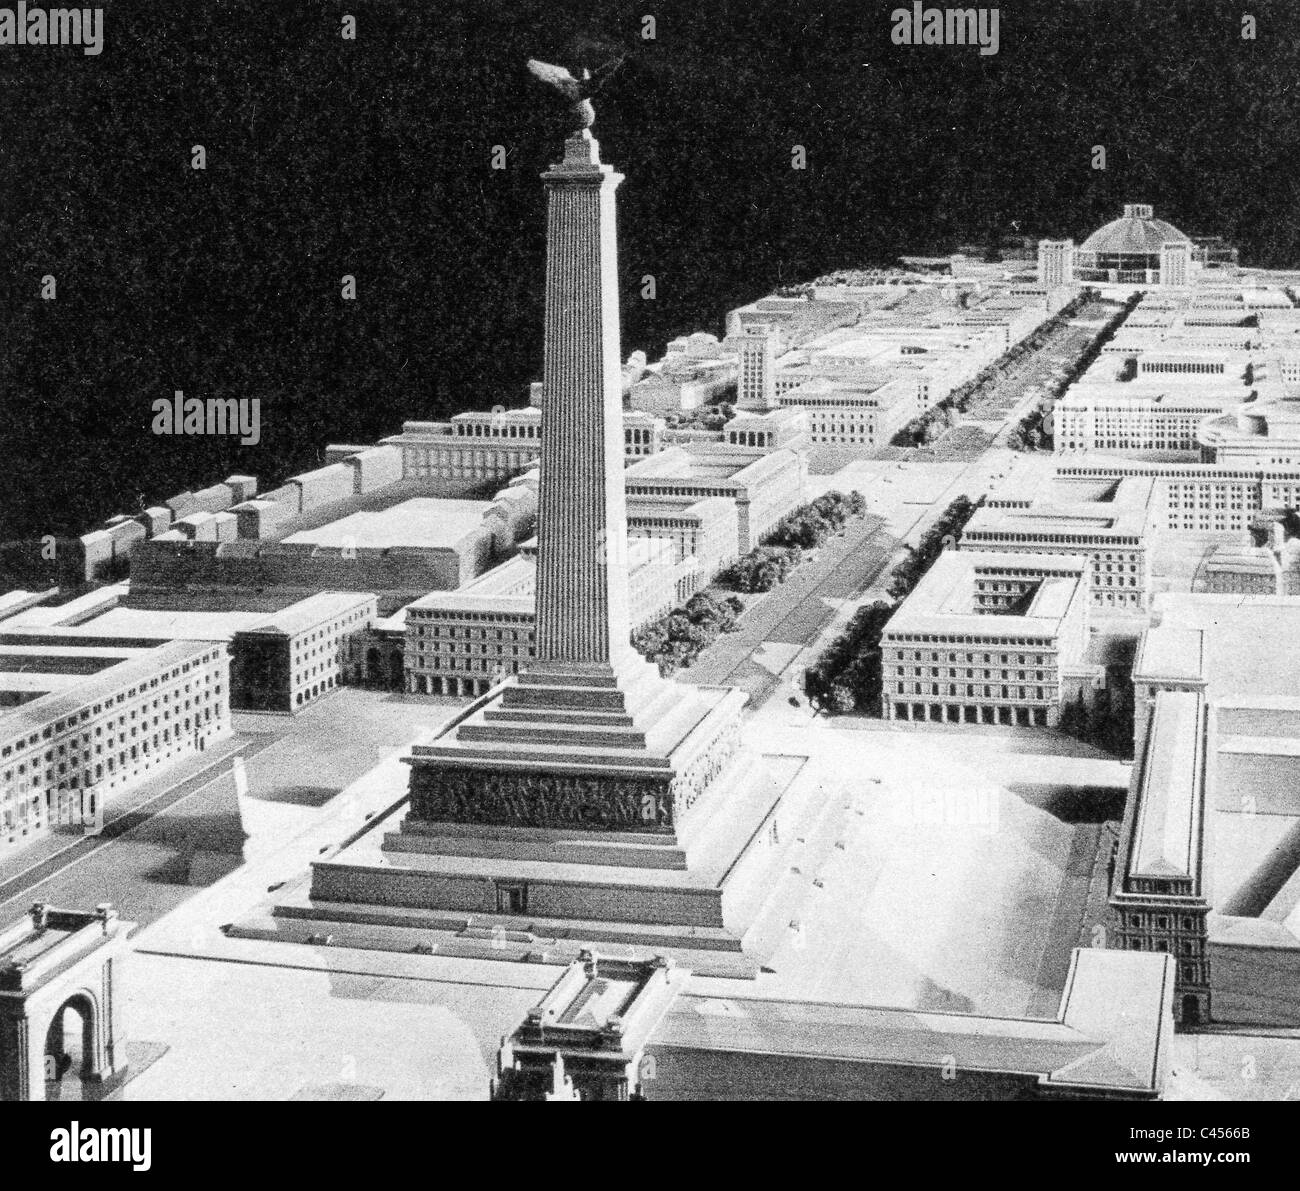 Modello del previsto boulevard di Monaco di Baviera con la Denkmal der Bewegung (monumento del movimento) Foto Stock